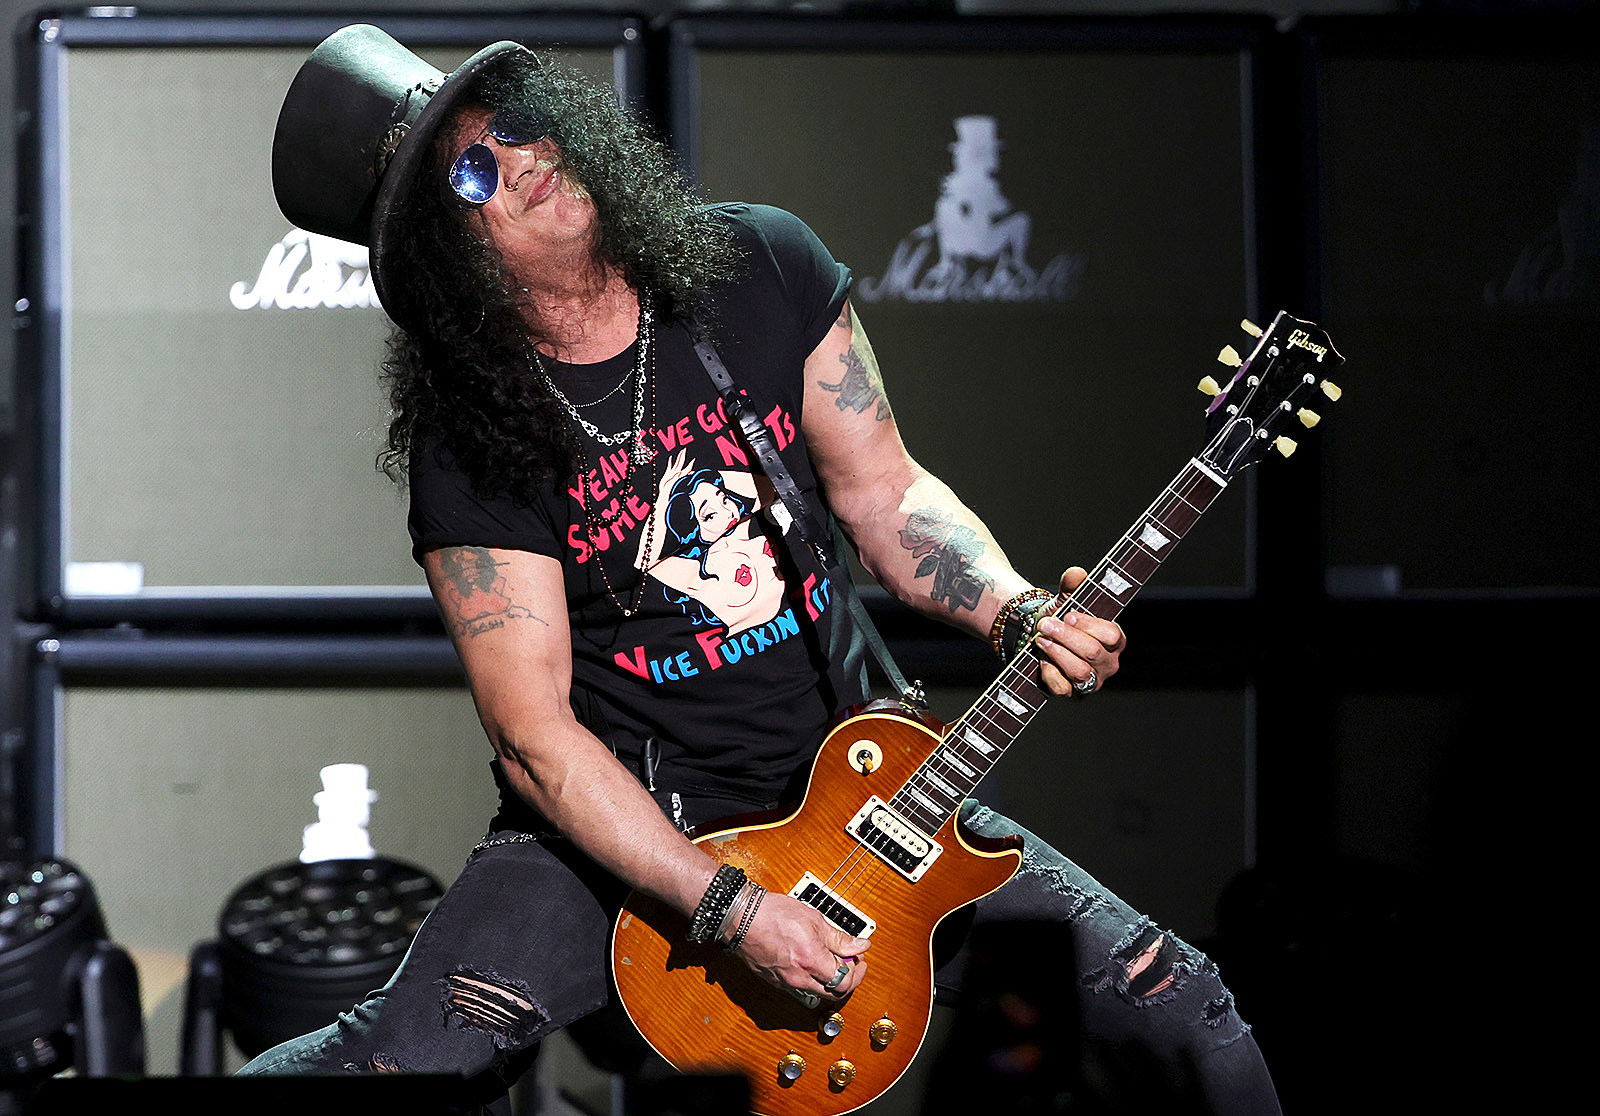 Guns N Roses' Guitarist Slash's Guitars, Gears and Euipment